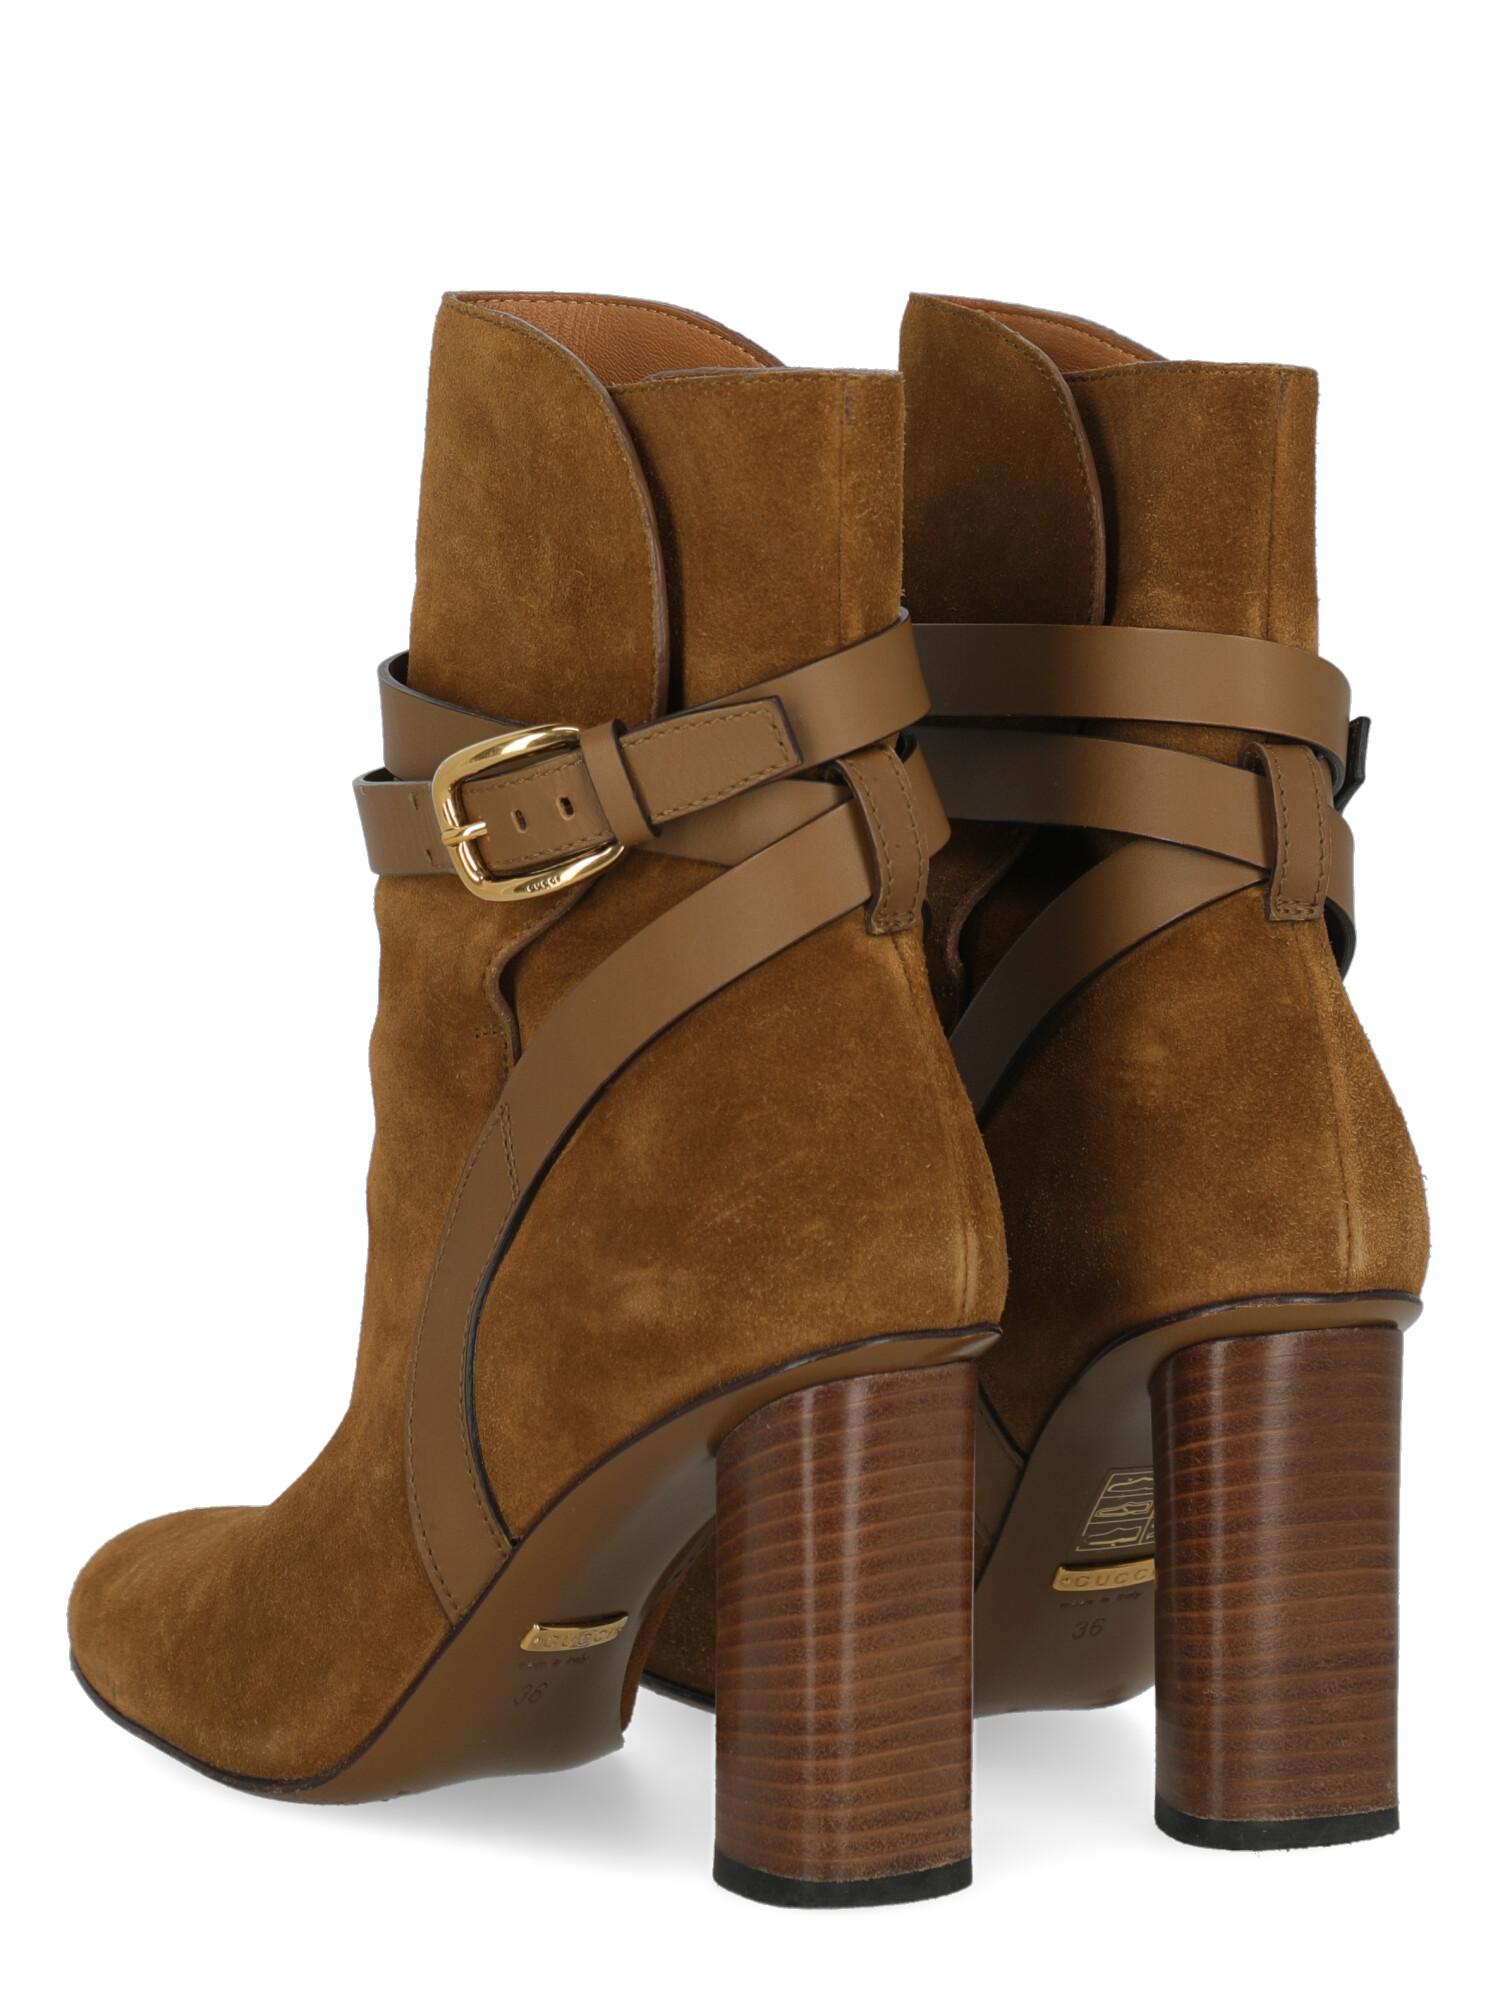 women's boots camel color